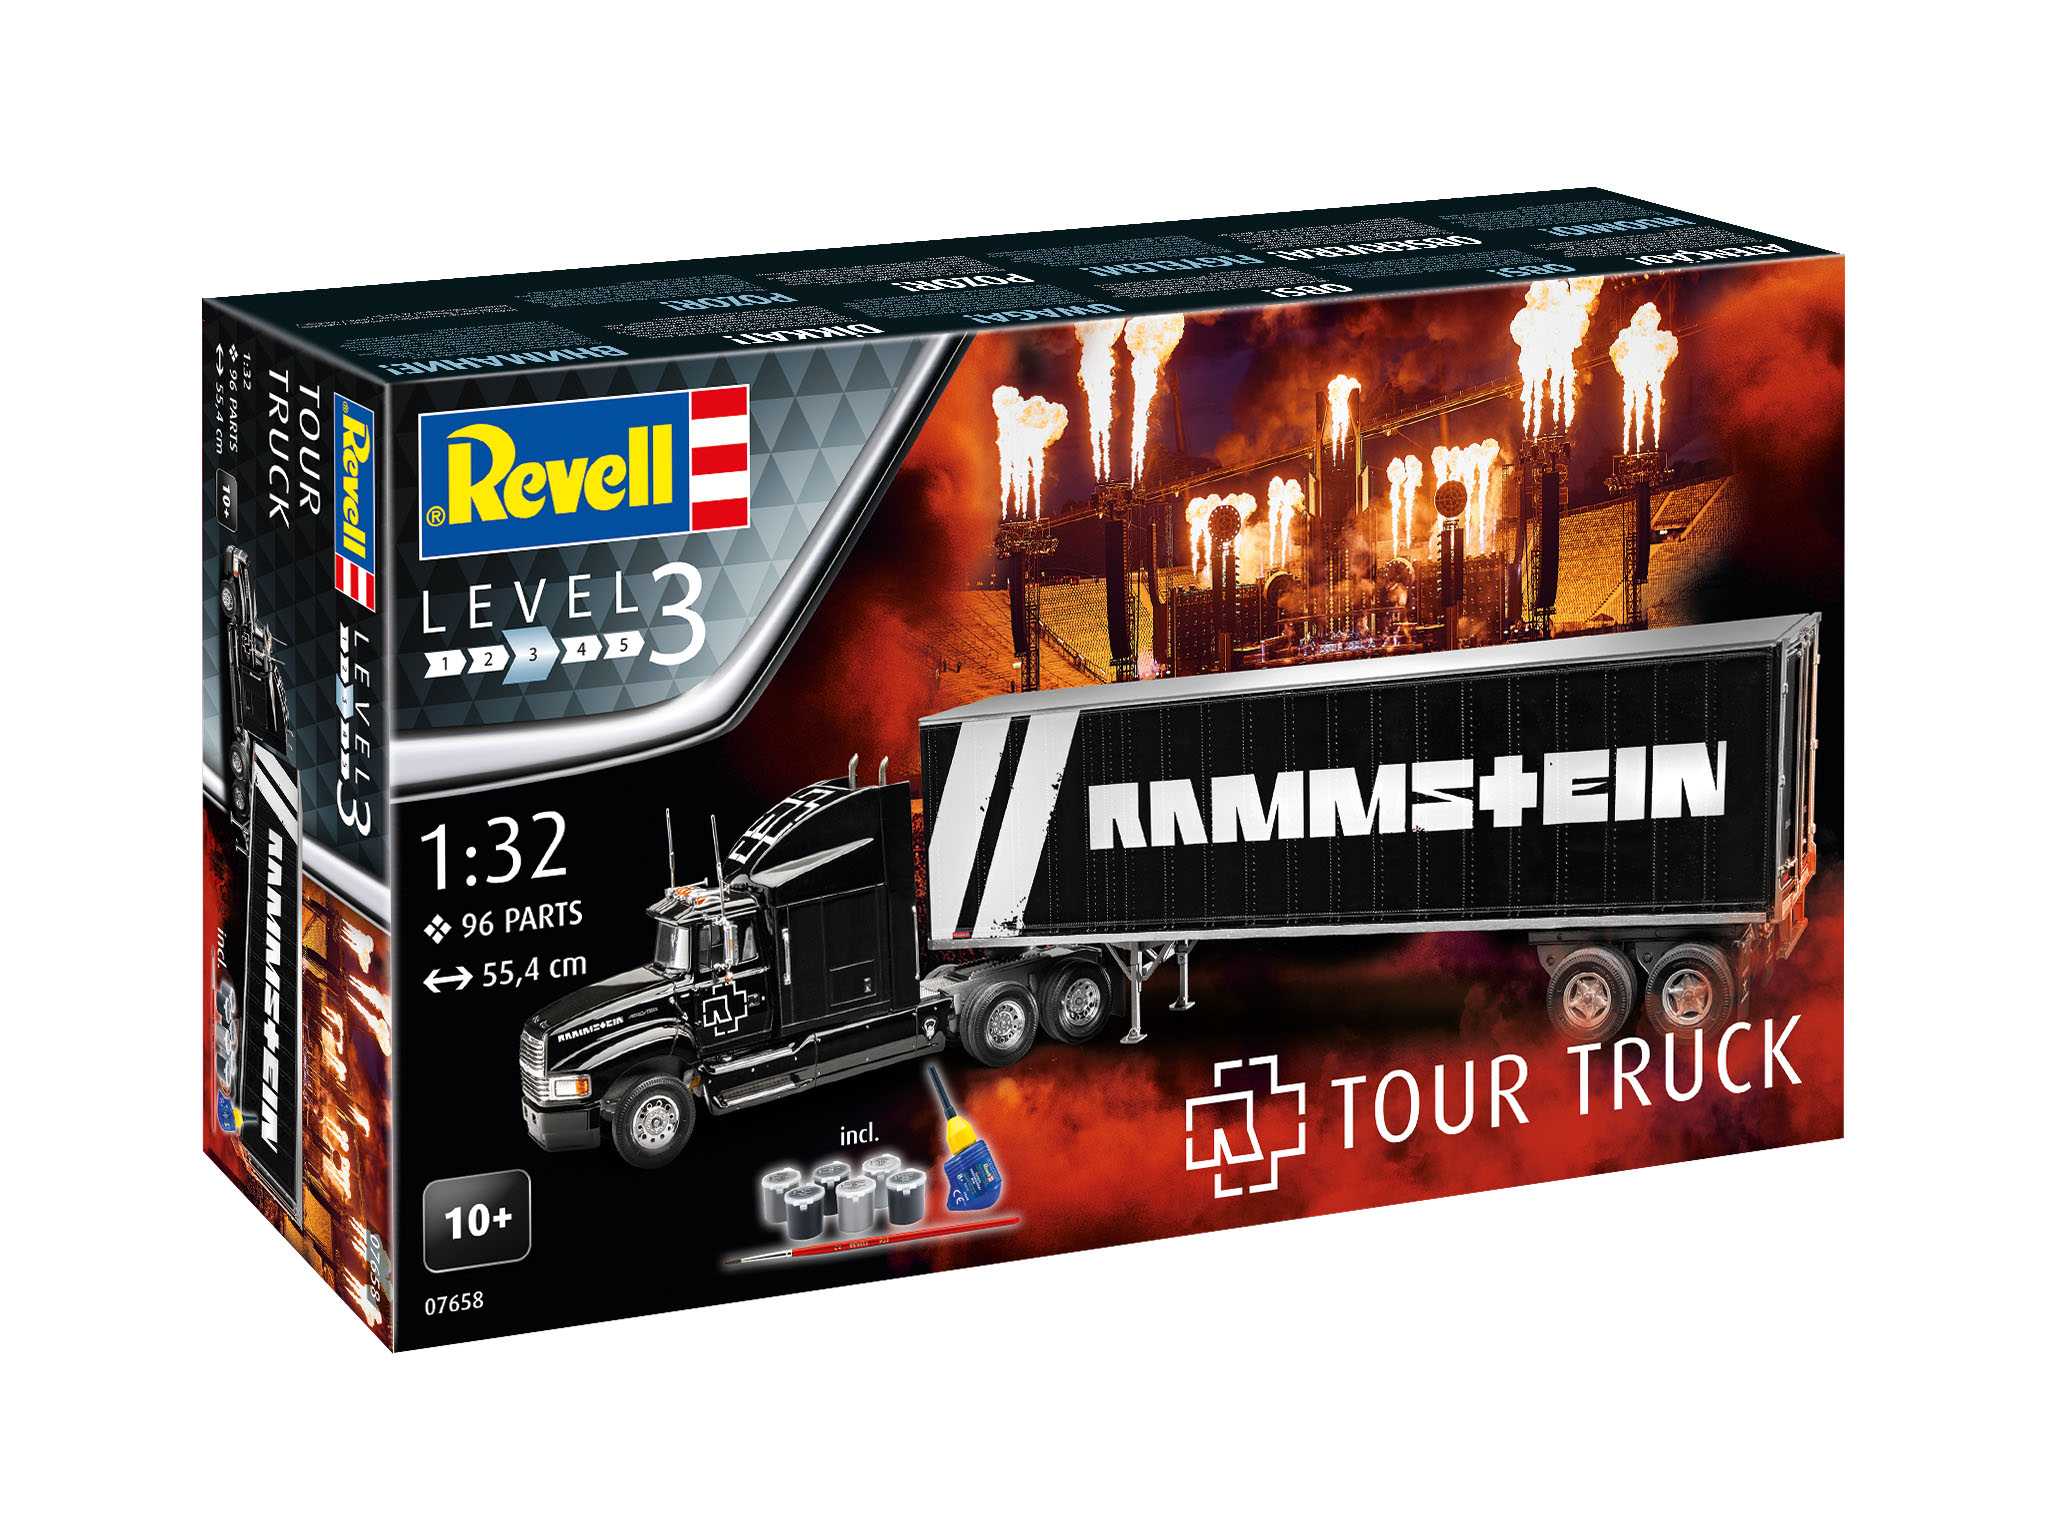 Fotografie Gift-Set truck 07658 - Rammstein Tour Truck (1:32)